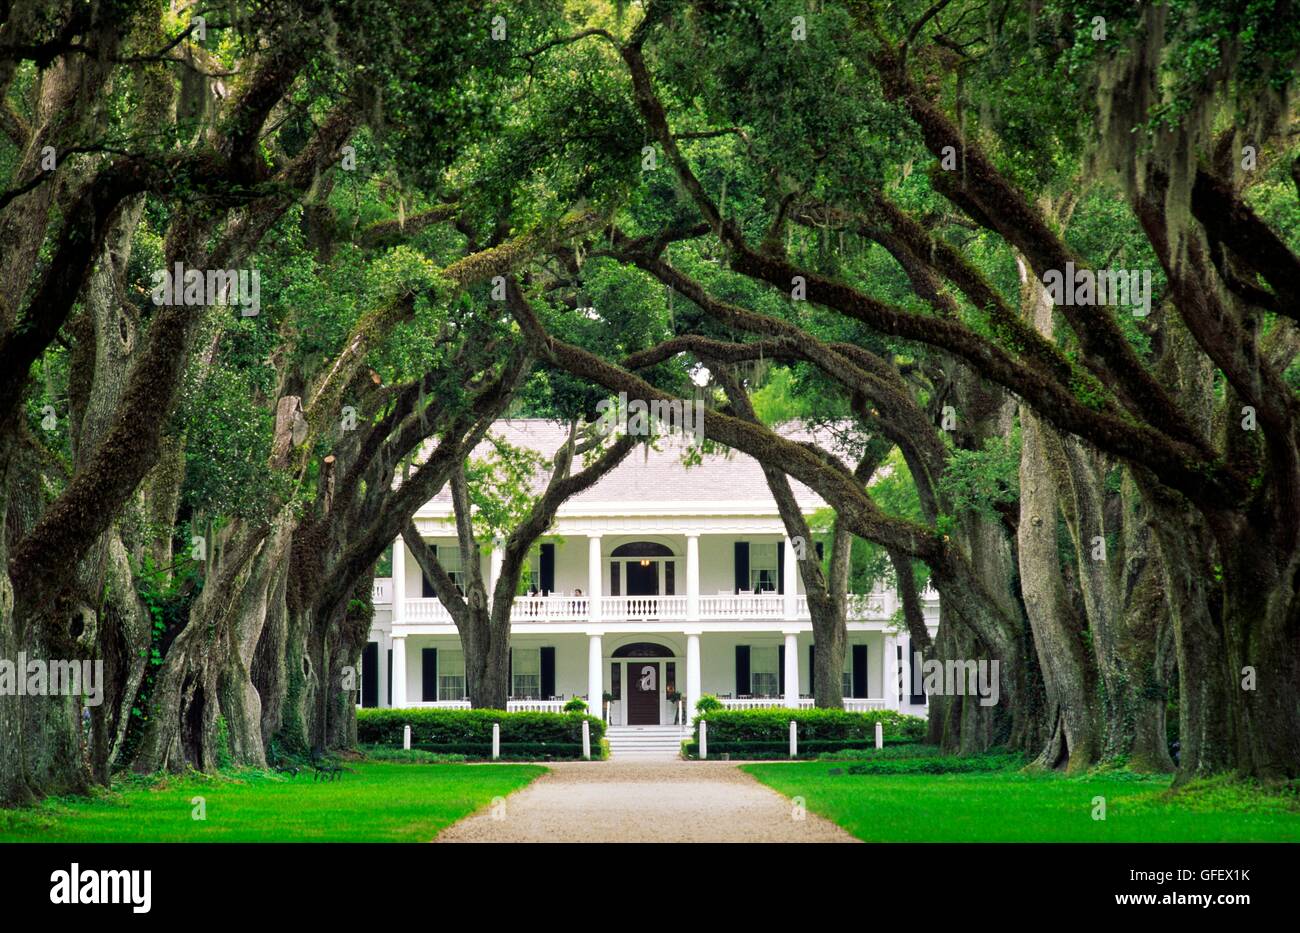 Plantation de rosedown antebellum mansion house près de la ville de francisville, Louisiane, Etats-Unis Banque D'Images